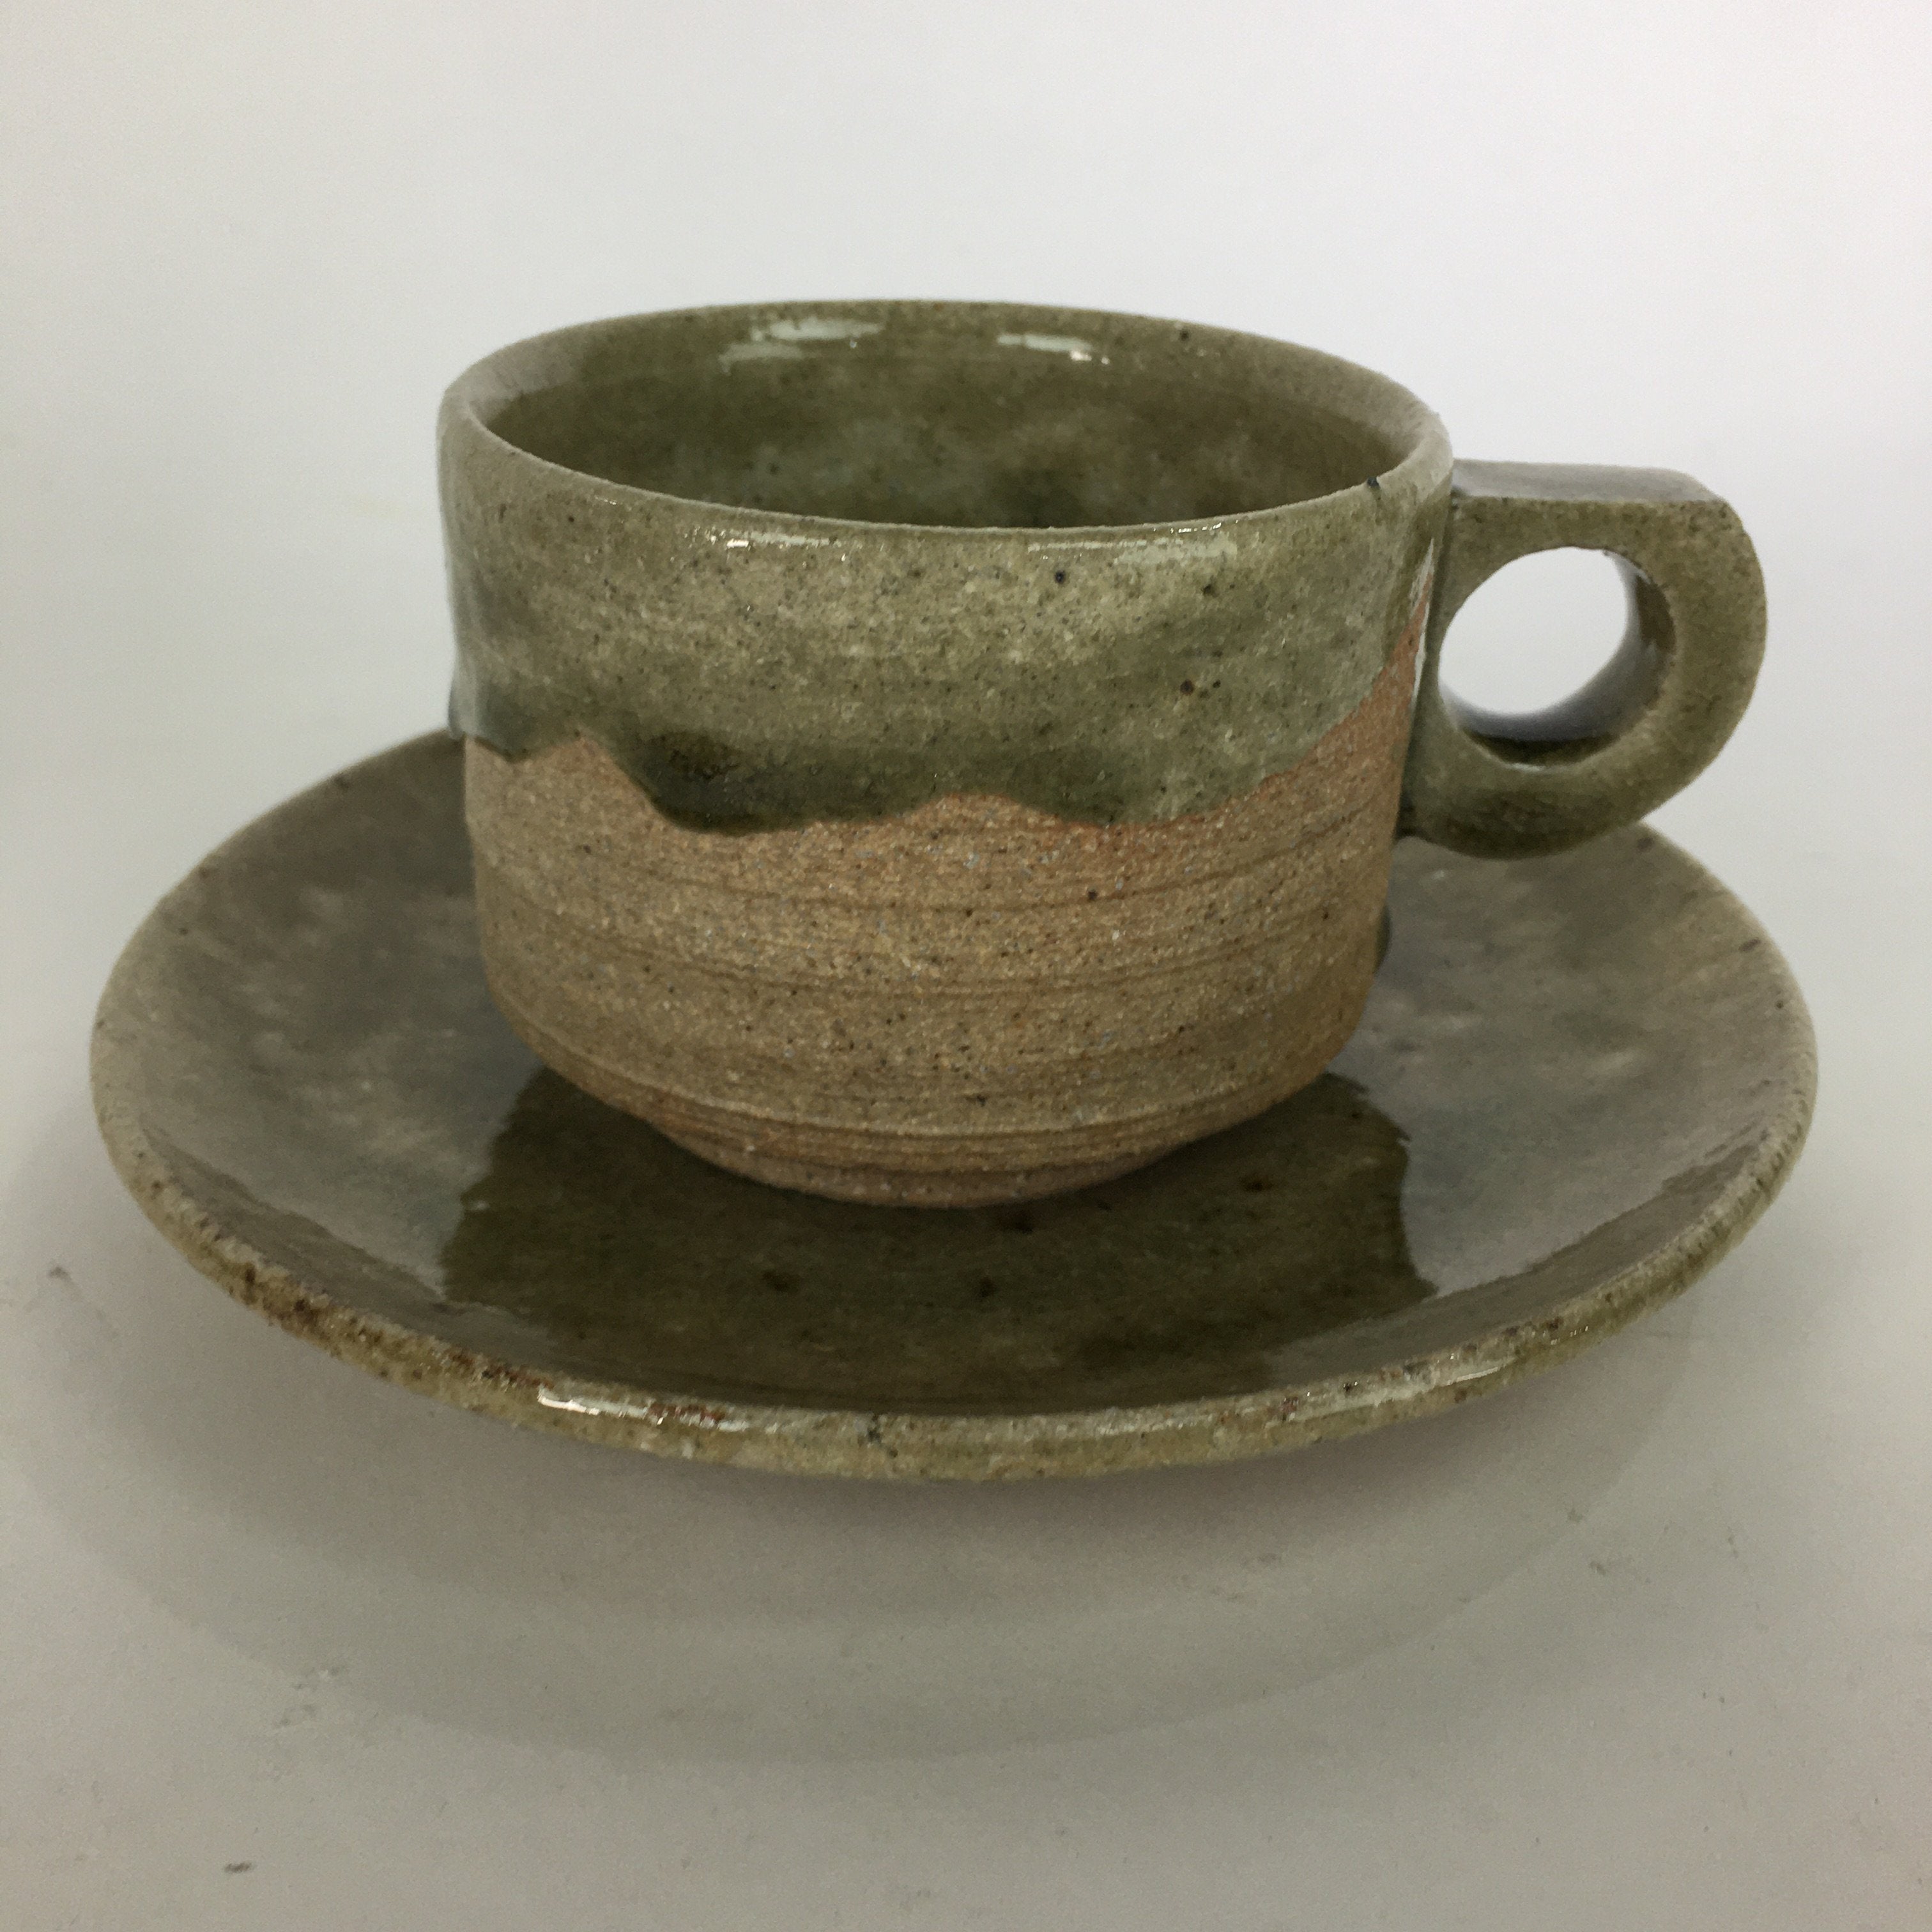 Japanese Ceramic Igayaki Teacup Mug Saucer Vtg Cup Plate Set Green Glaze PP573